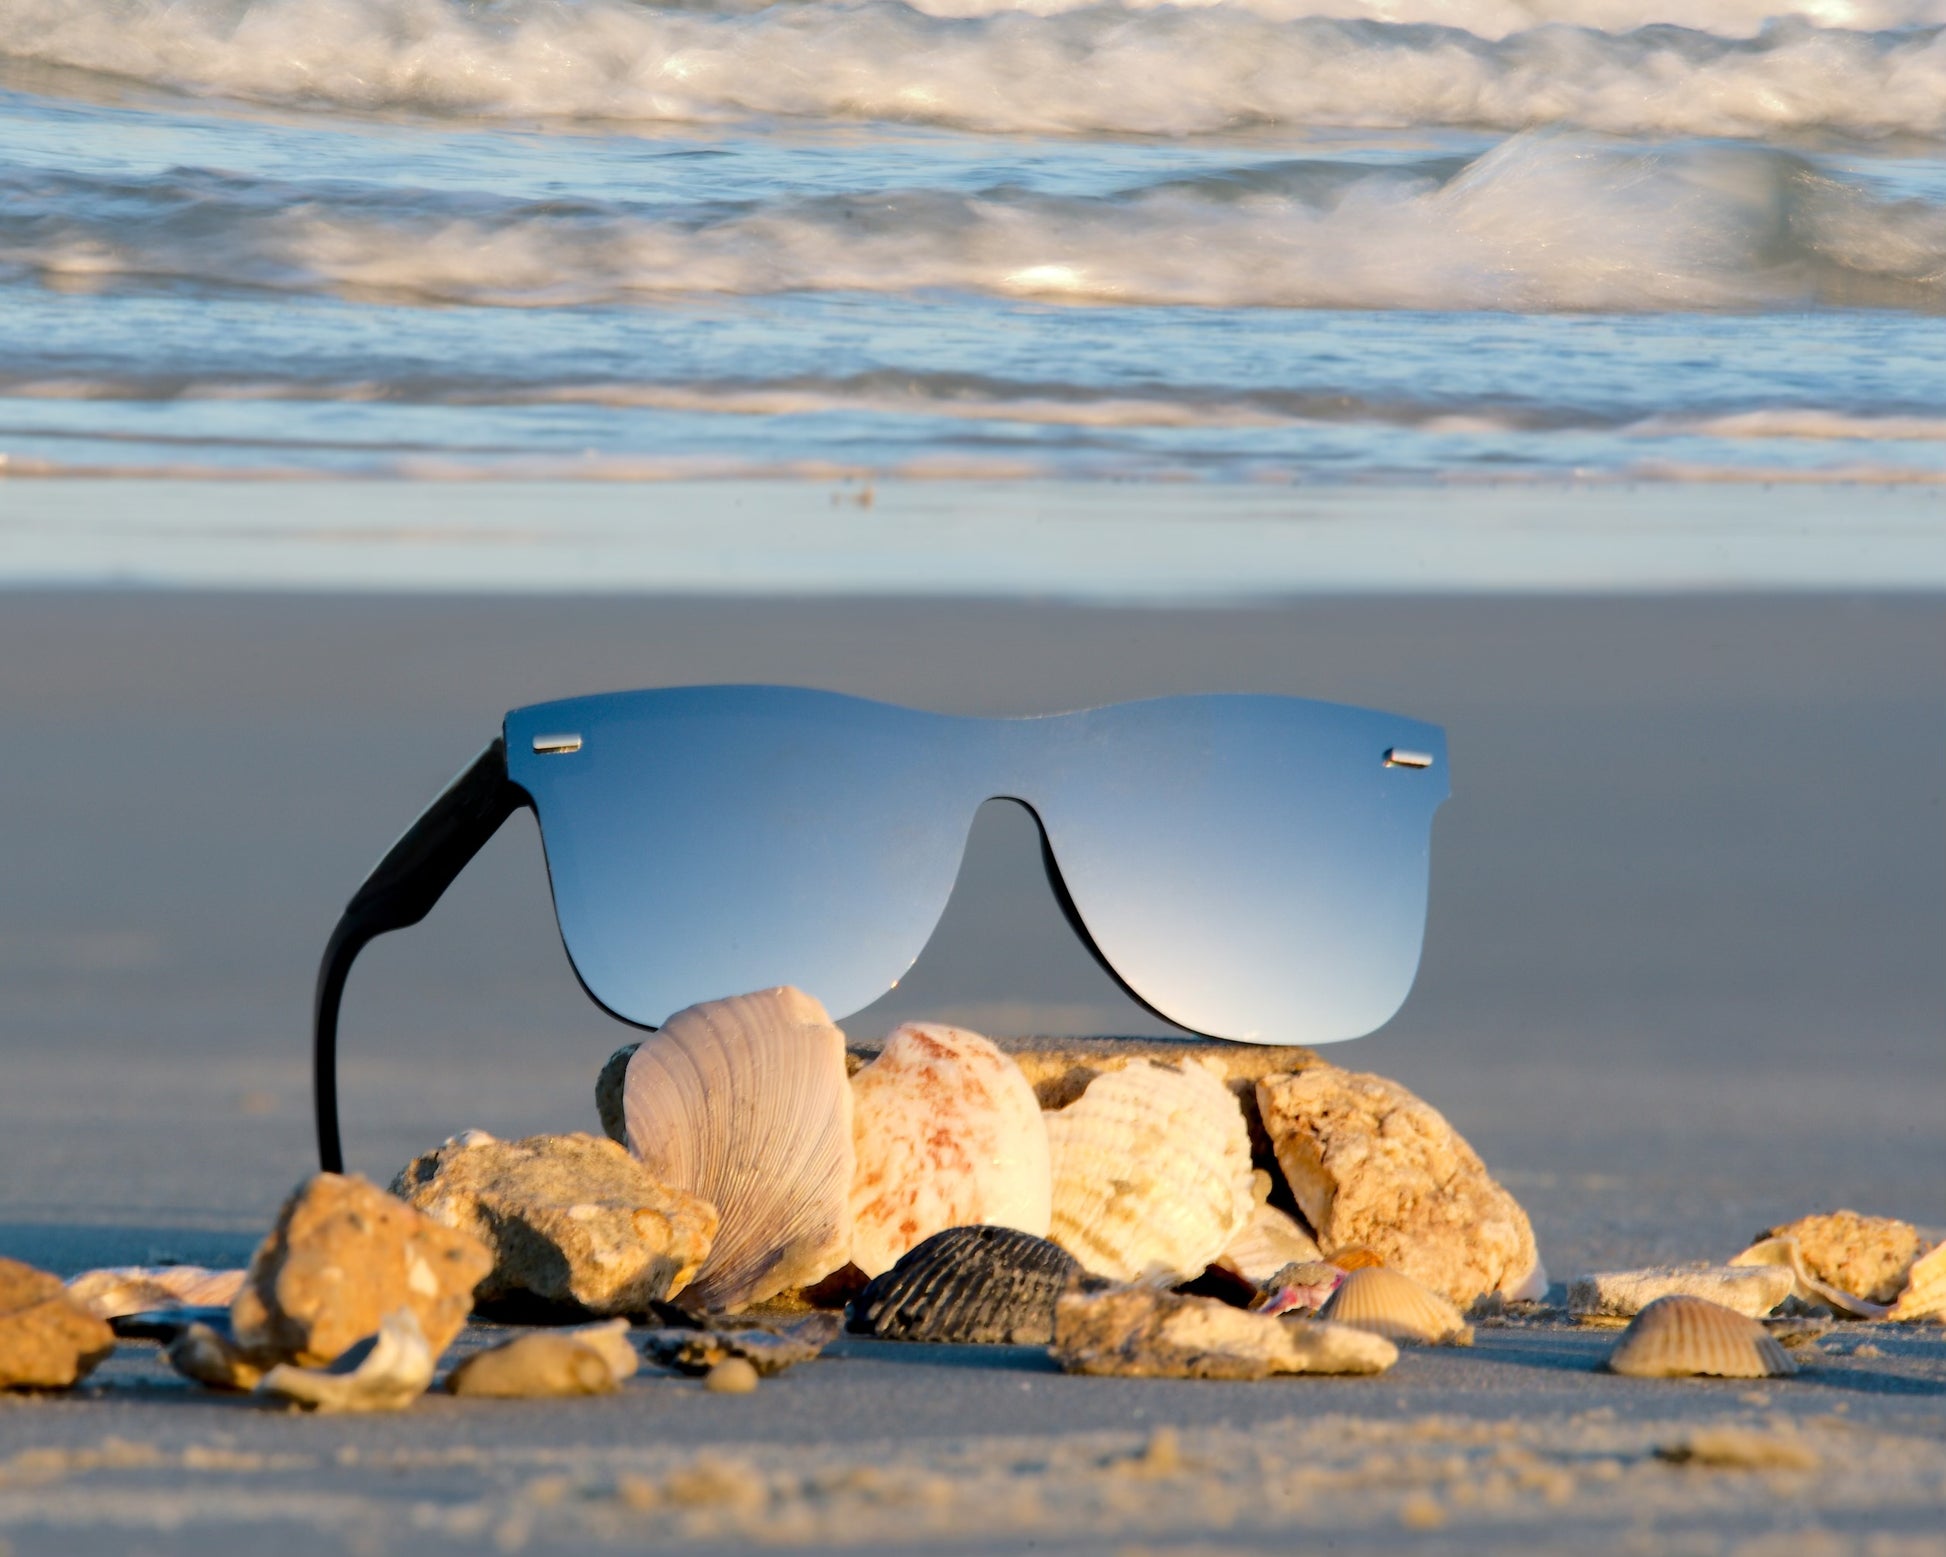 sunglasses on the beach sand